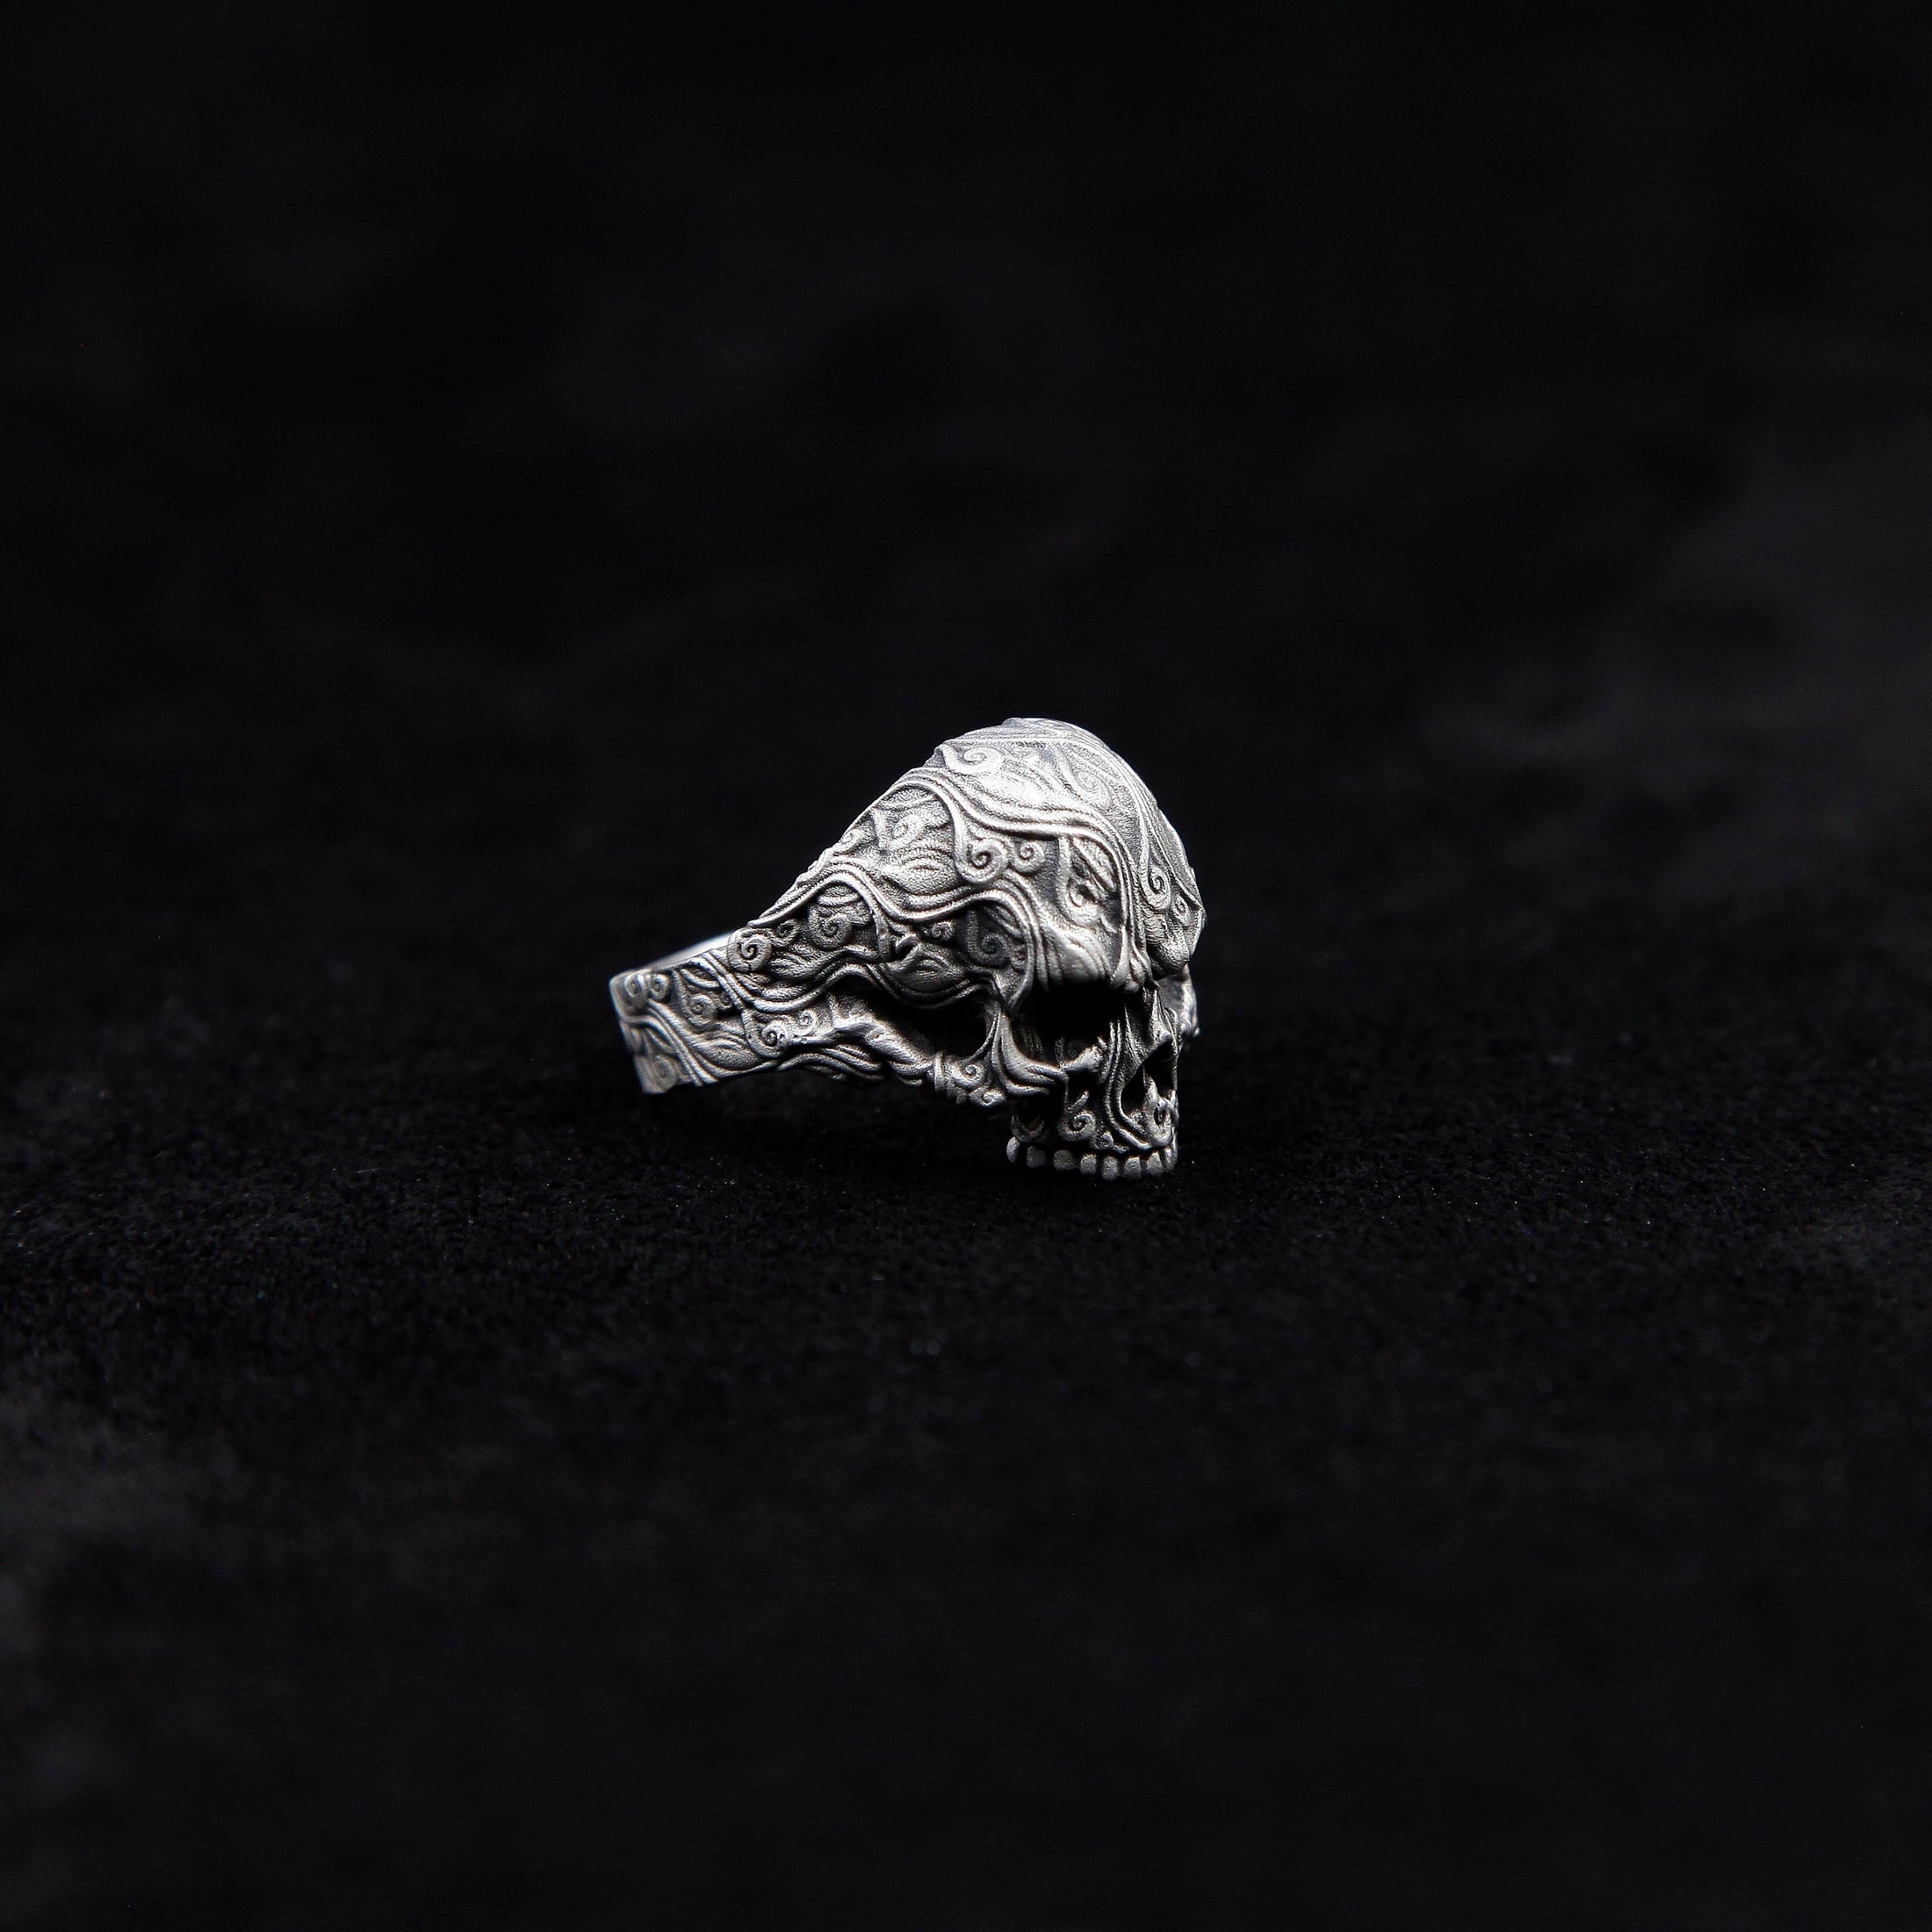 Silver Skull Rings For Mens Signet Skull Ring Unique Gift For Man Biker Skull Ring Silver Pinky Skull Ring Silver Gothic Ring For Men